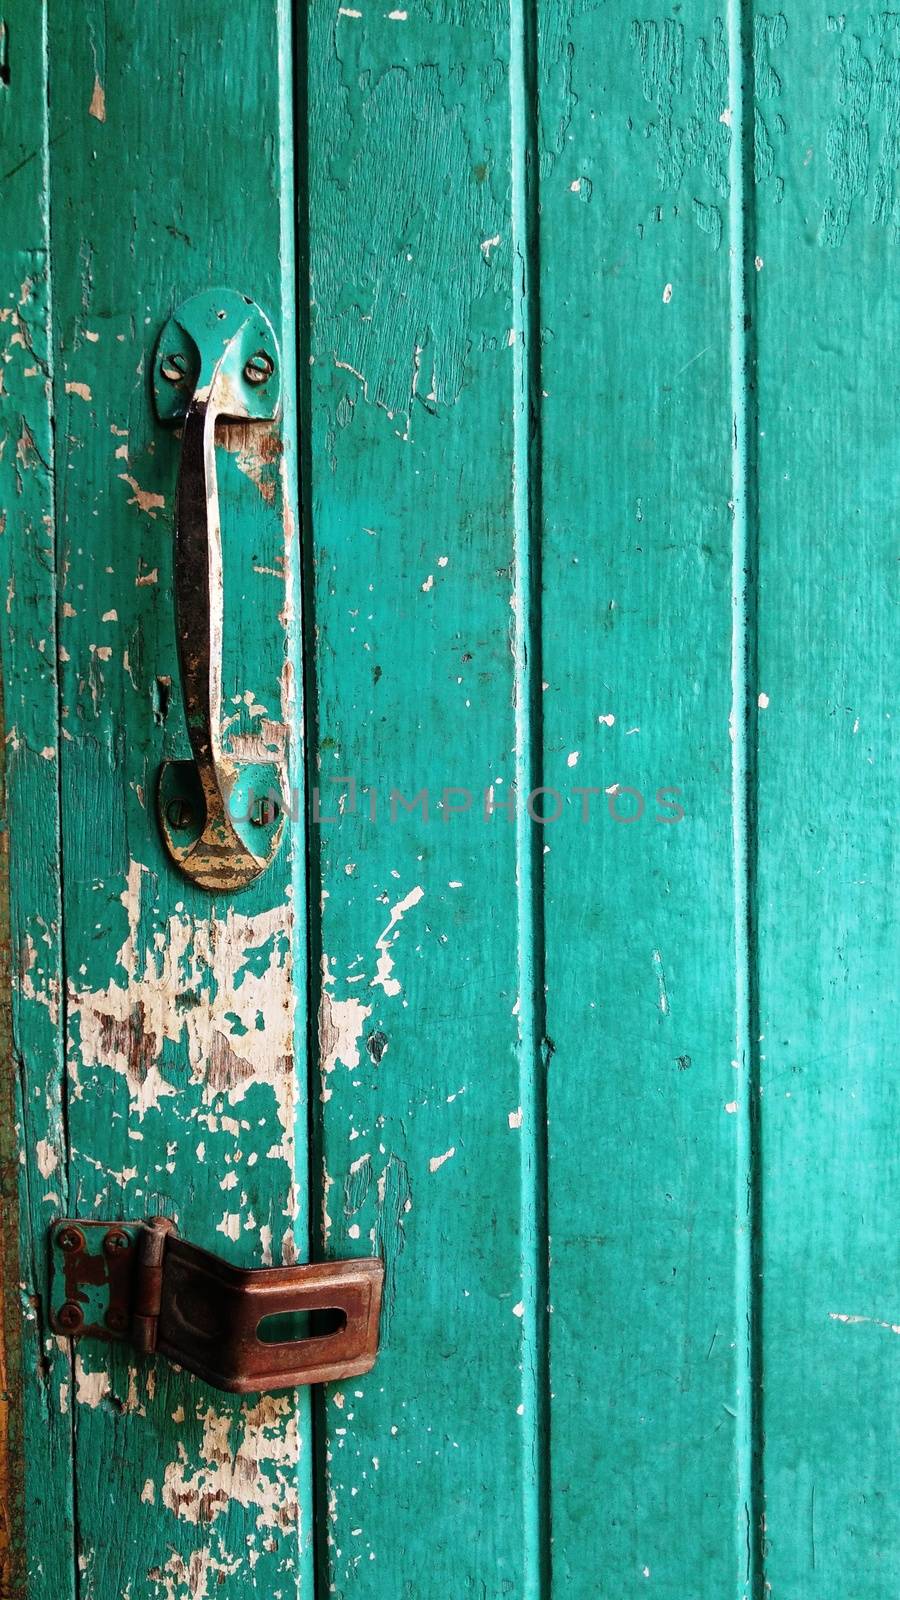 Old Green Wooden Door with Key